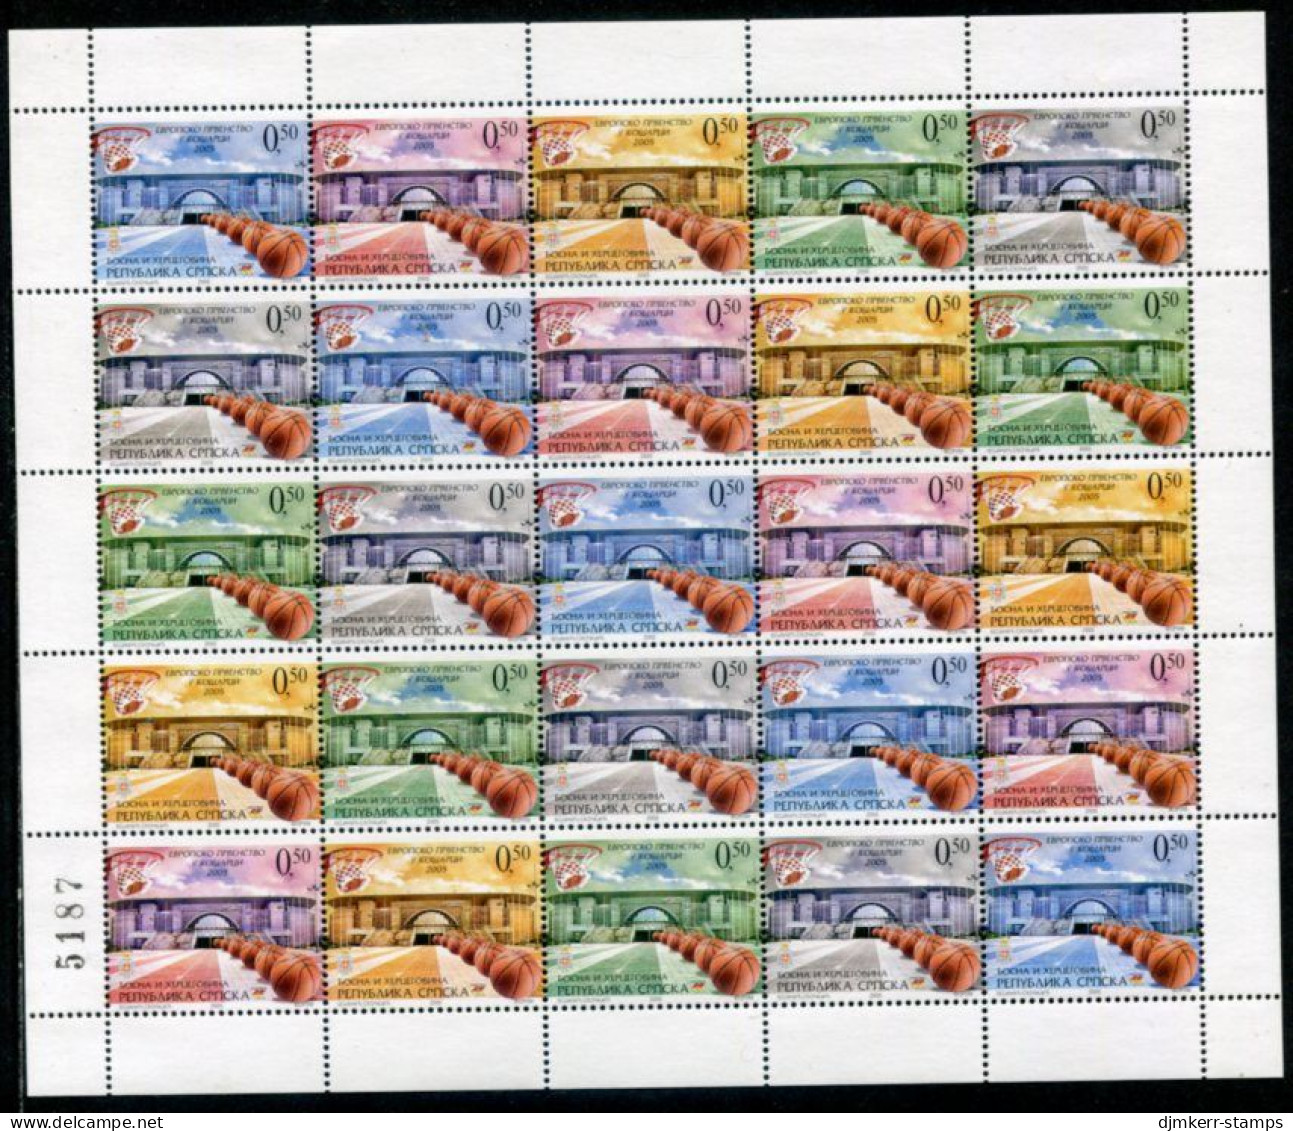 BOSNIAN SERB REPUBLIC 2005 Basketball Sheet With Artist's Initials NS On Stamp 18 MNH / **.  Michel 343-47 - Bosnie-Herzegovine